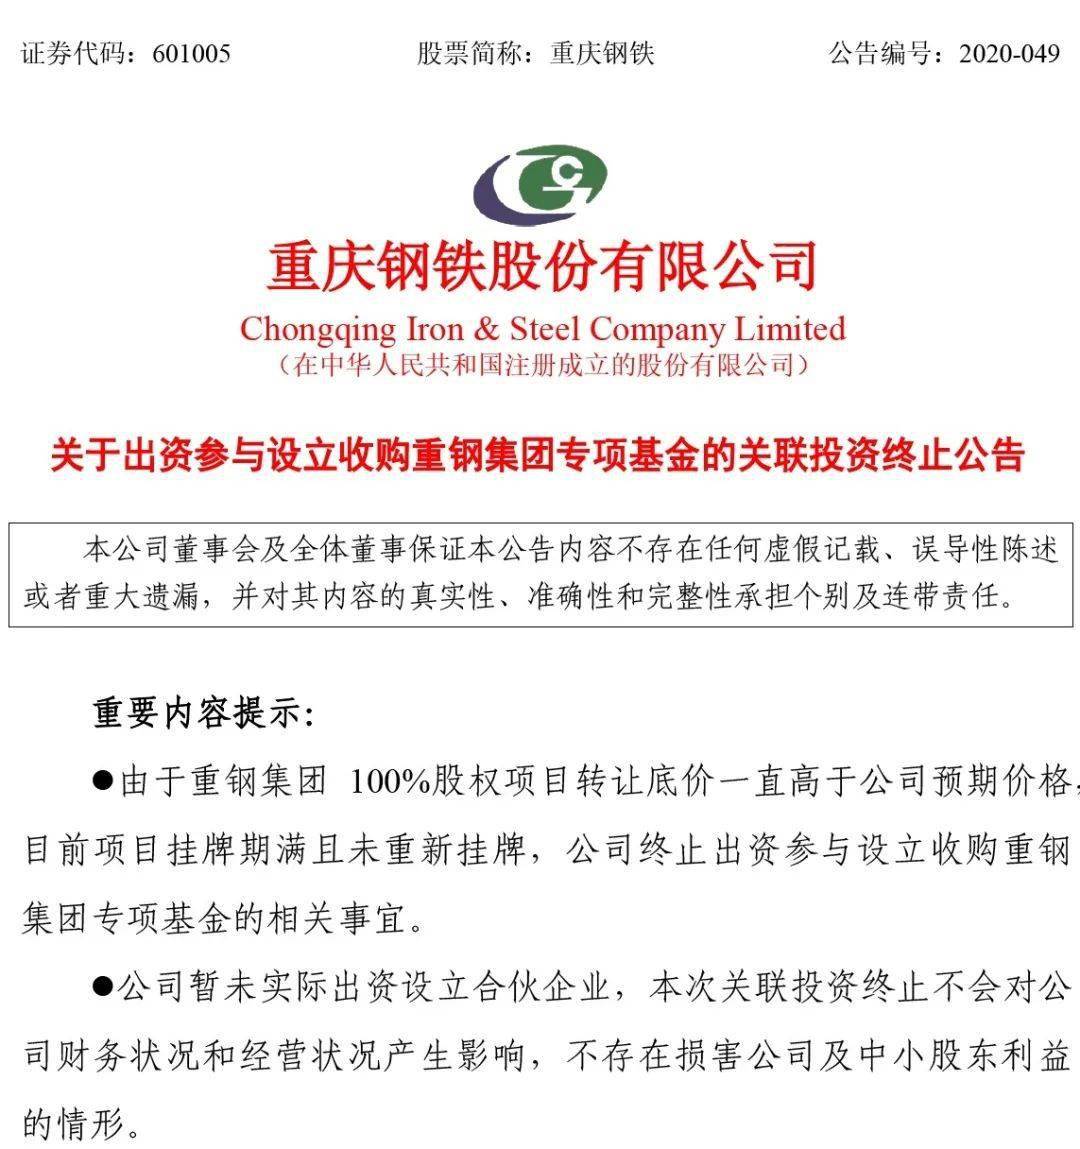 重庆钢铁股份亚博买球海外监管公告